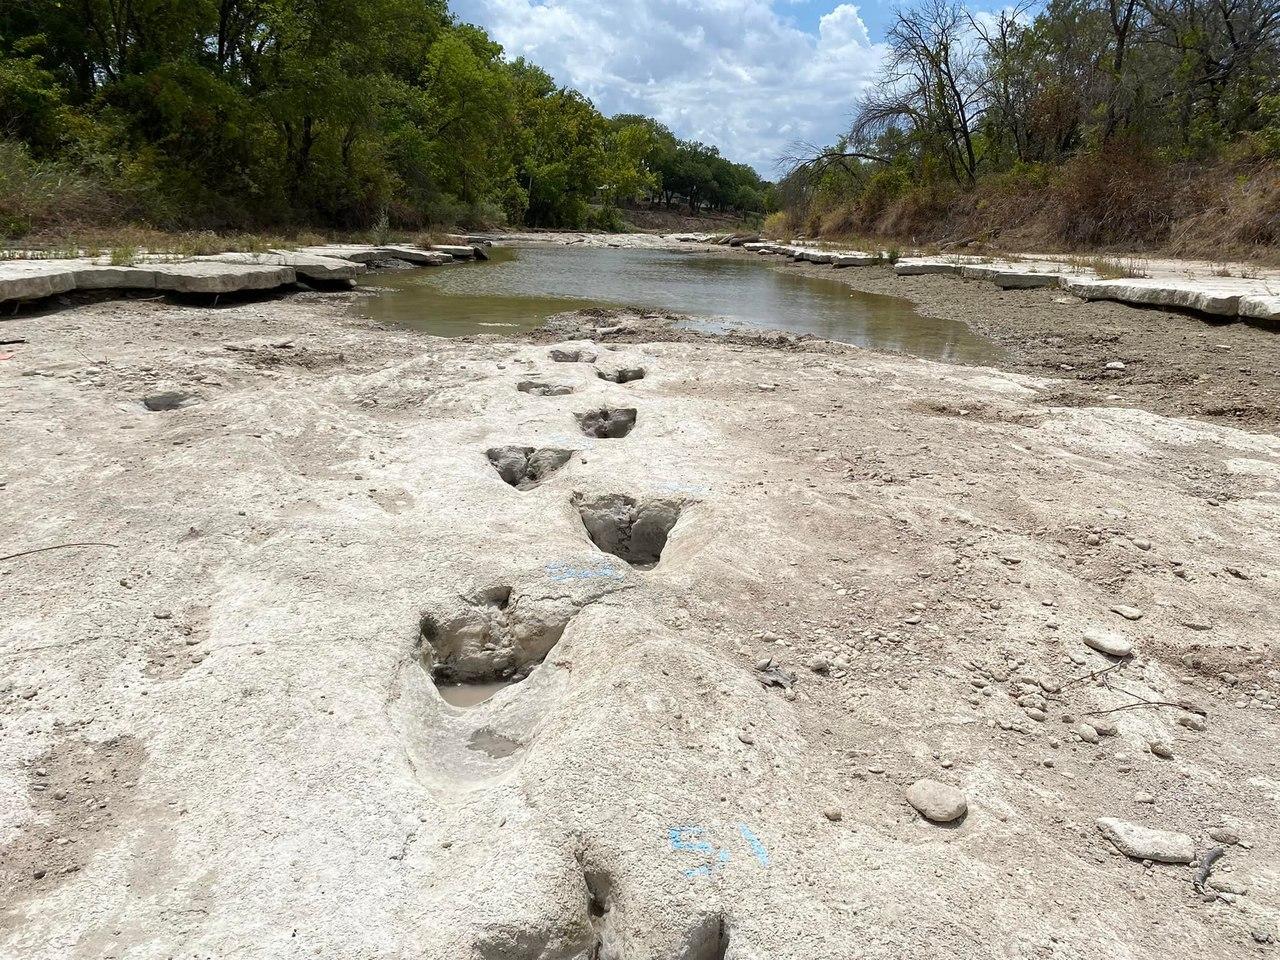 Pegadas de dinossauros reveladas por seca em rio que atravessa o Parque Estadual do Vale dos Dinossauros, Texas, Estados Unidos